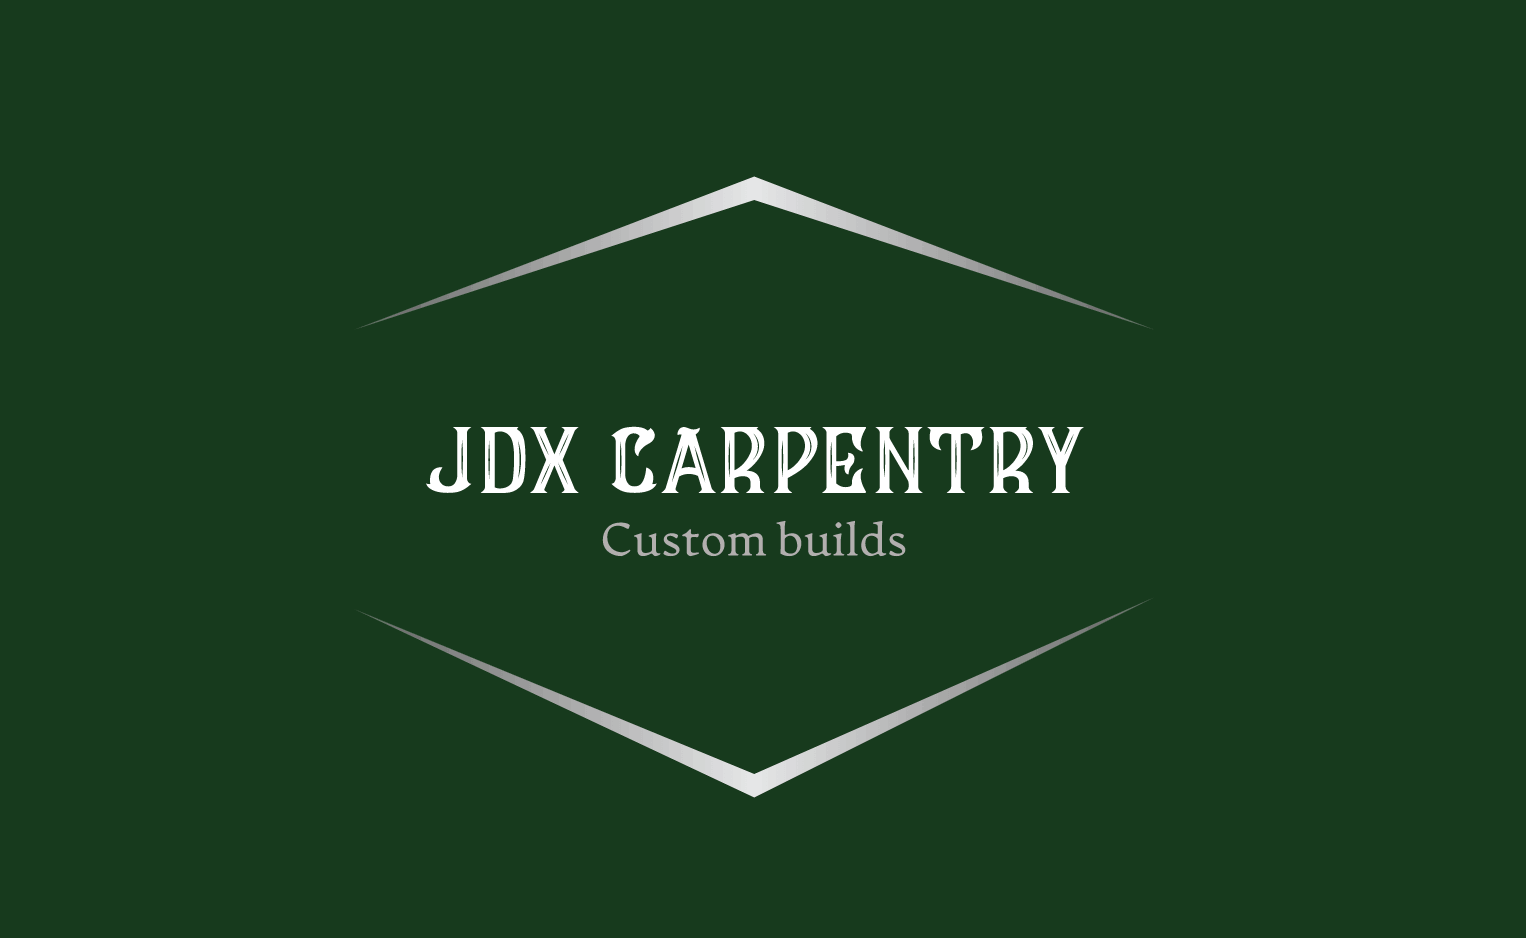 Зразок логотипу для деревообробки, виготовлений з Looka - JDX Carpentry